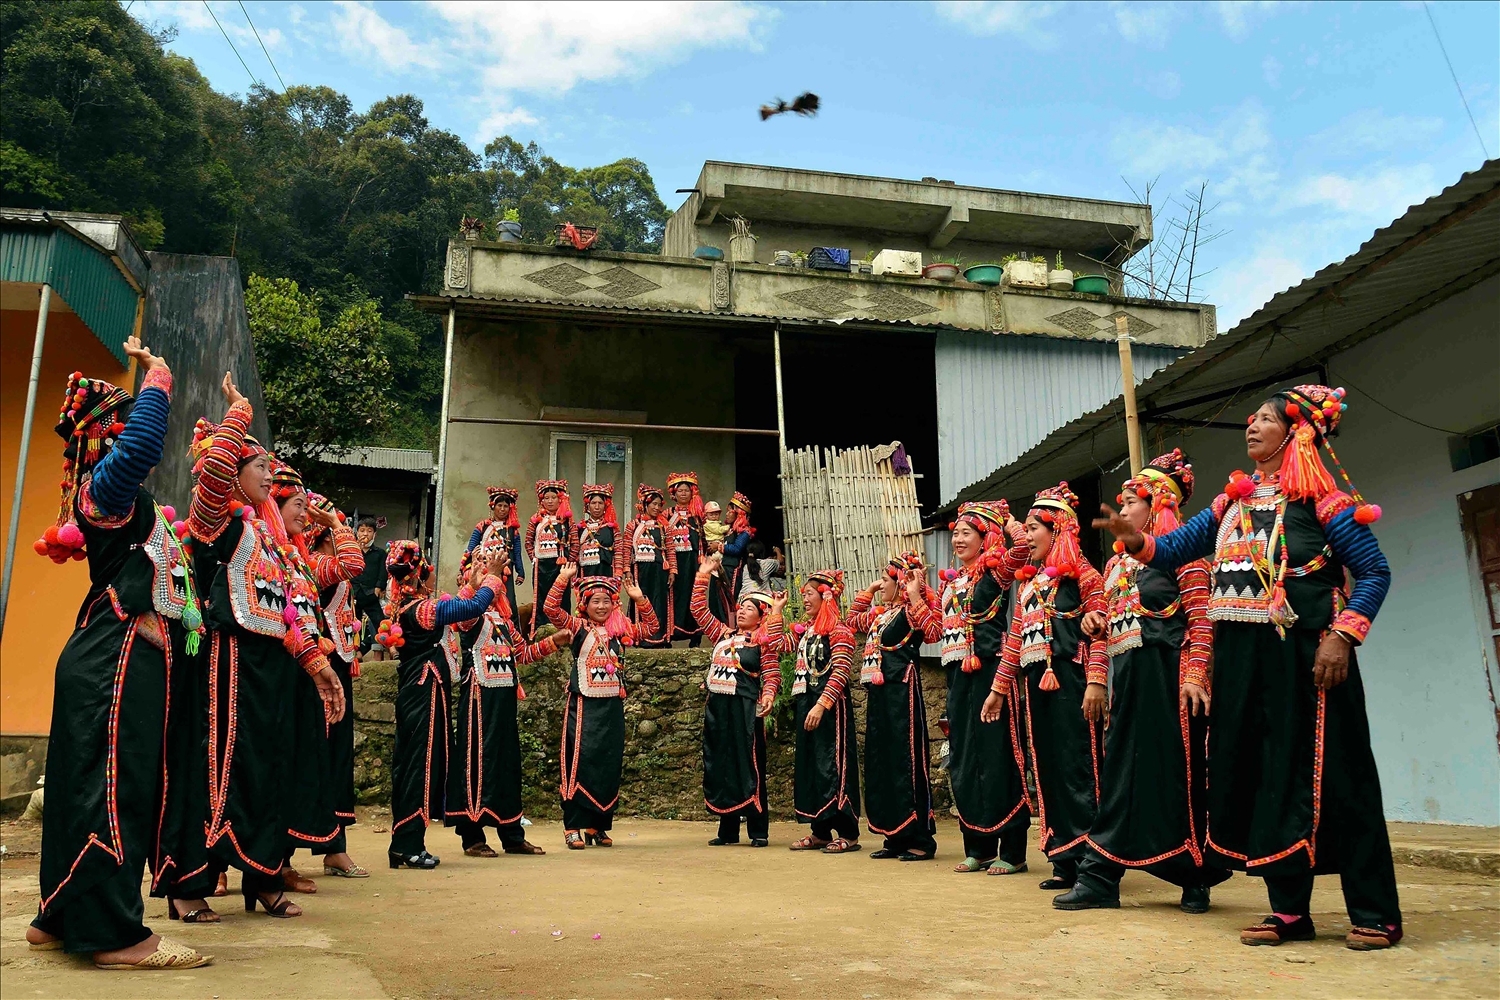 Đánh cầu lông gà, môn thể thao truyền thống được người Hà Nhì yêu thích trong các ngày lễ tết.